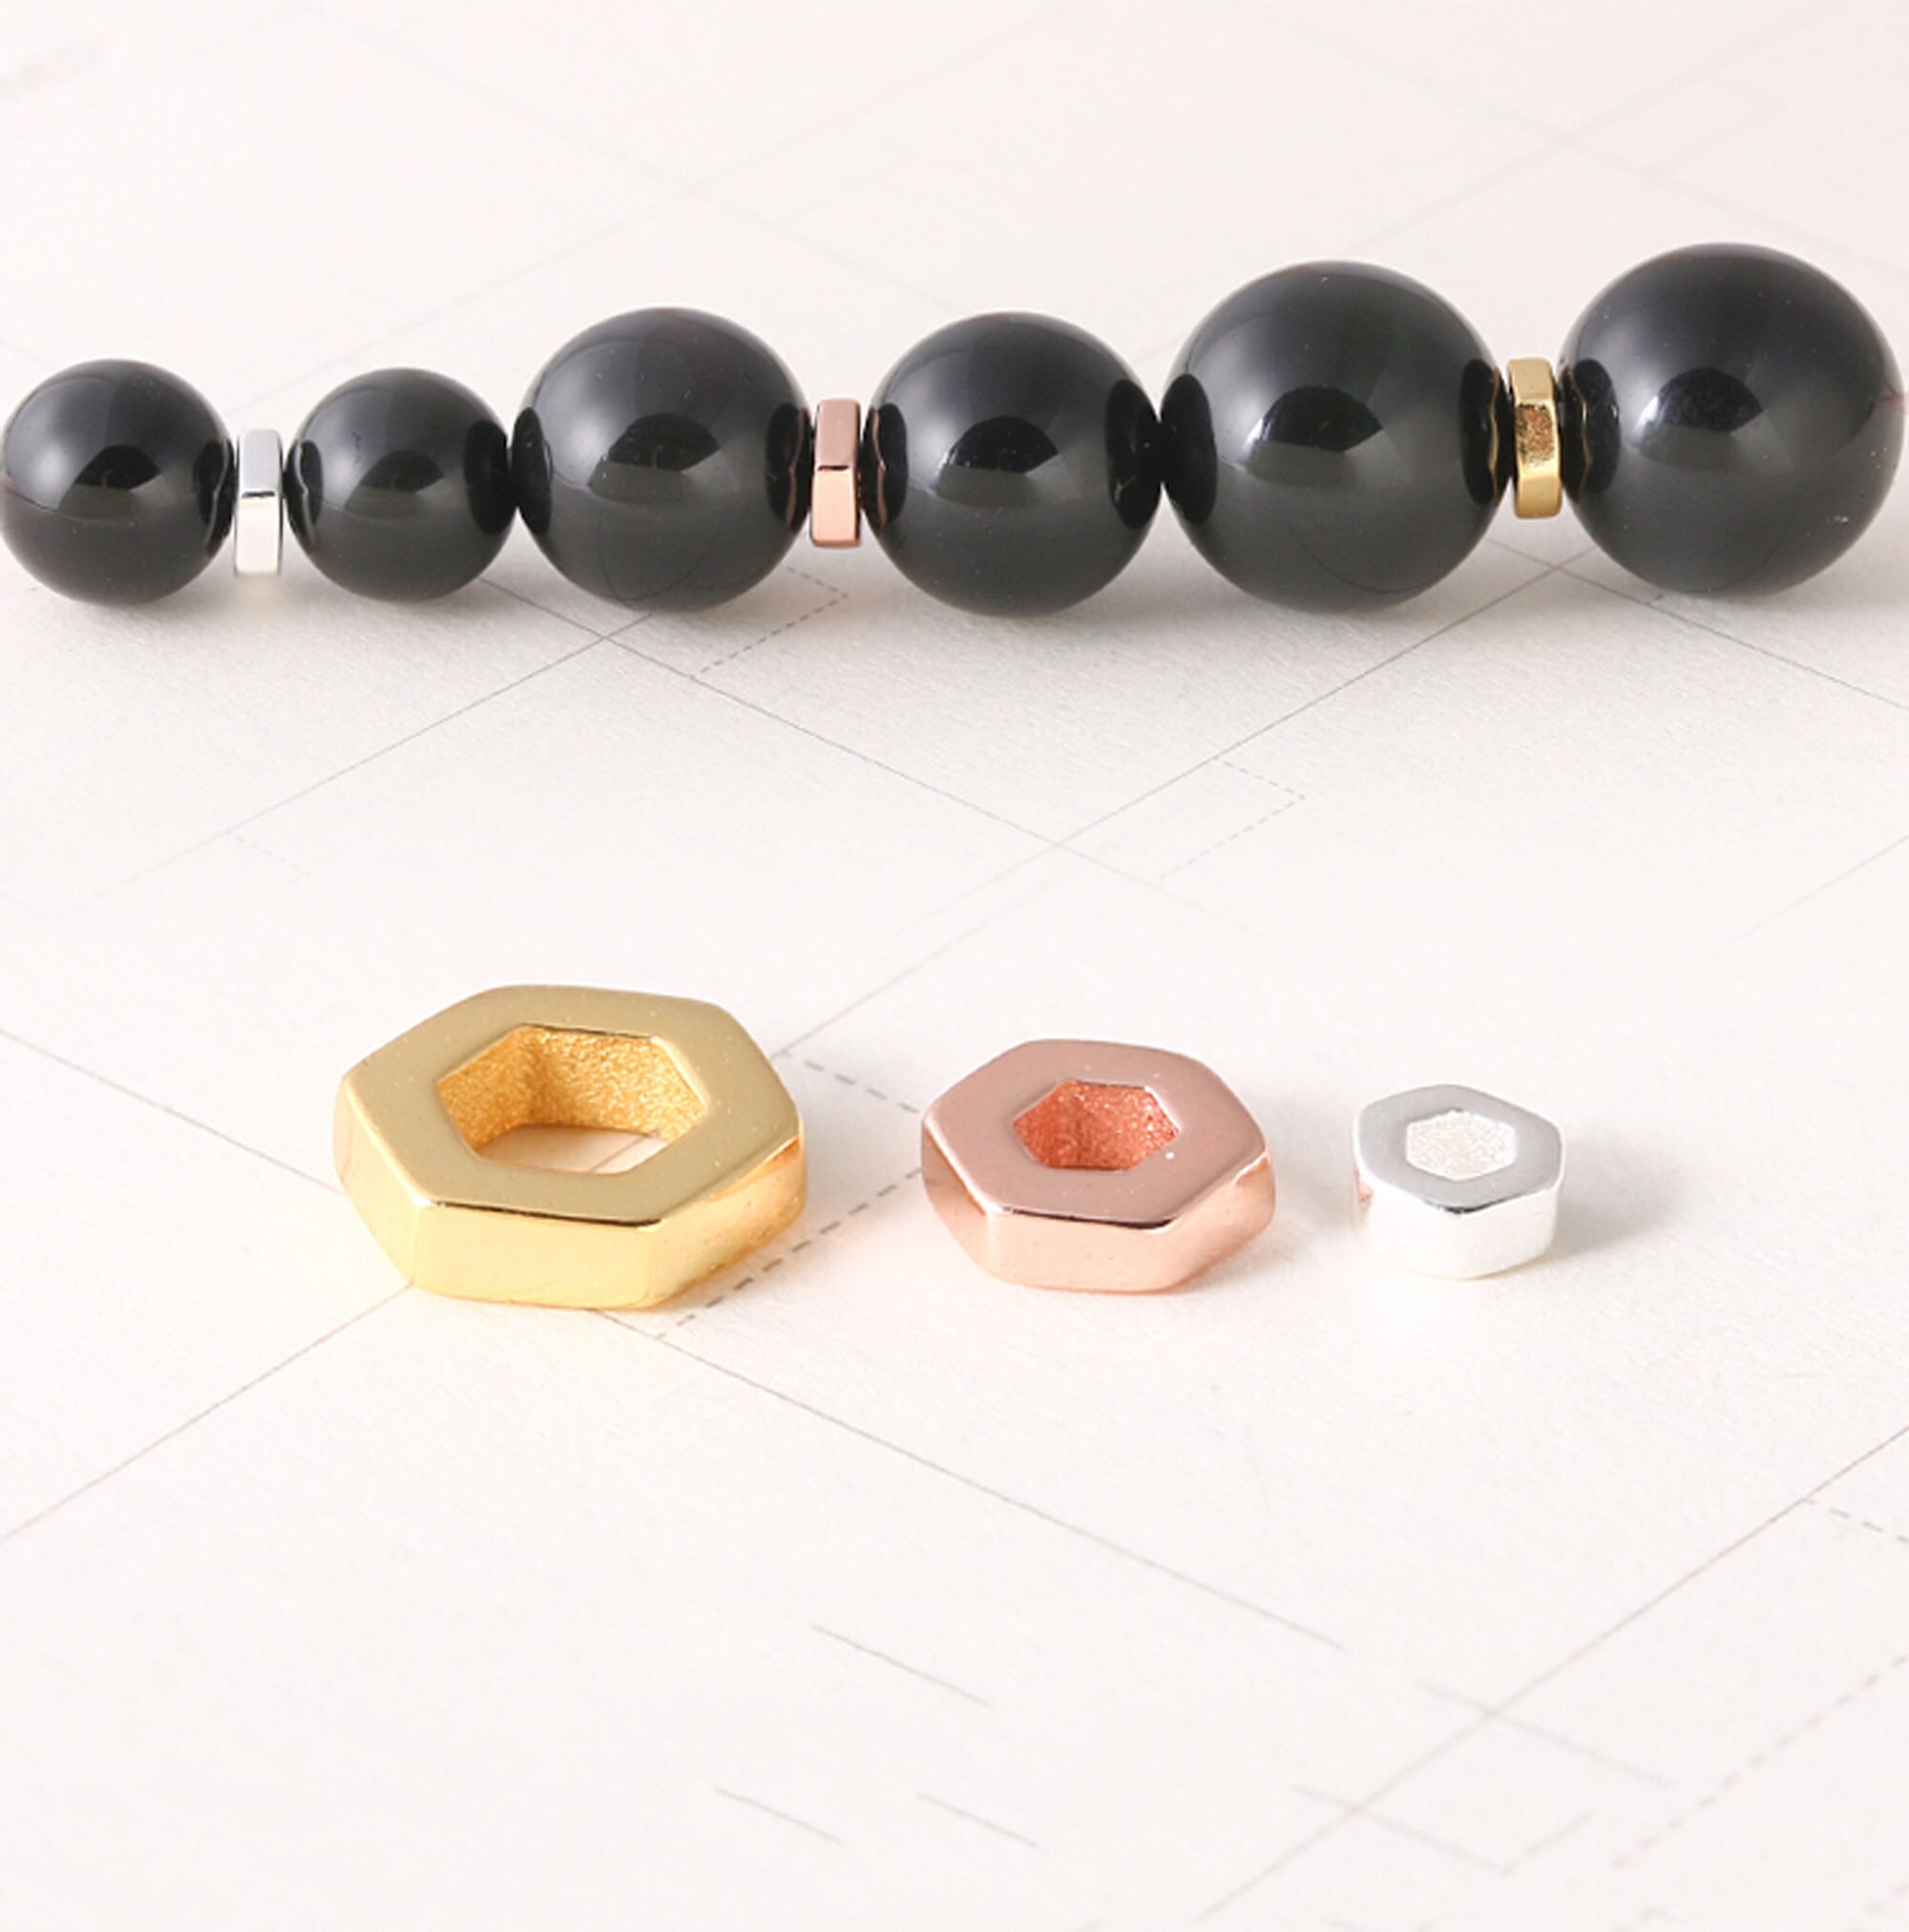 8mm Hexagon Flat Hematite Round Beads, Black Hematite Beads,Matte Hematite  Gemstone Beads ,Approx 15.5 Inch Strand